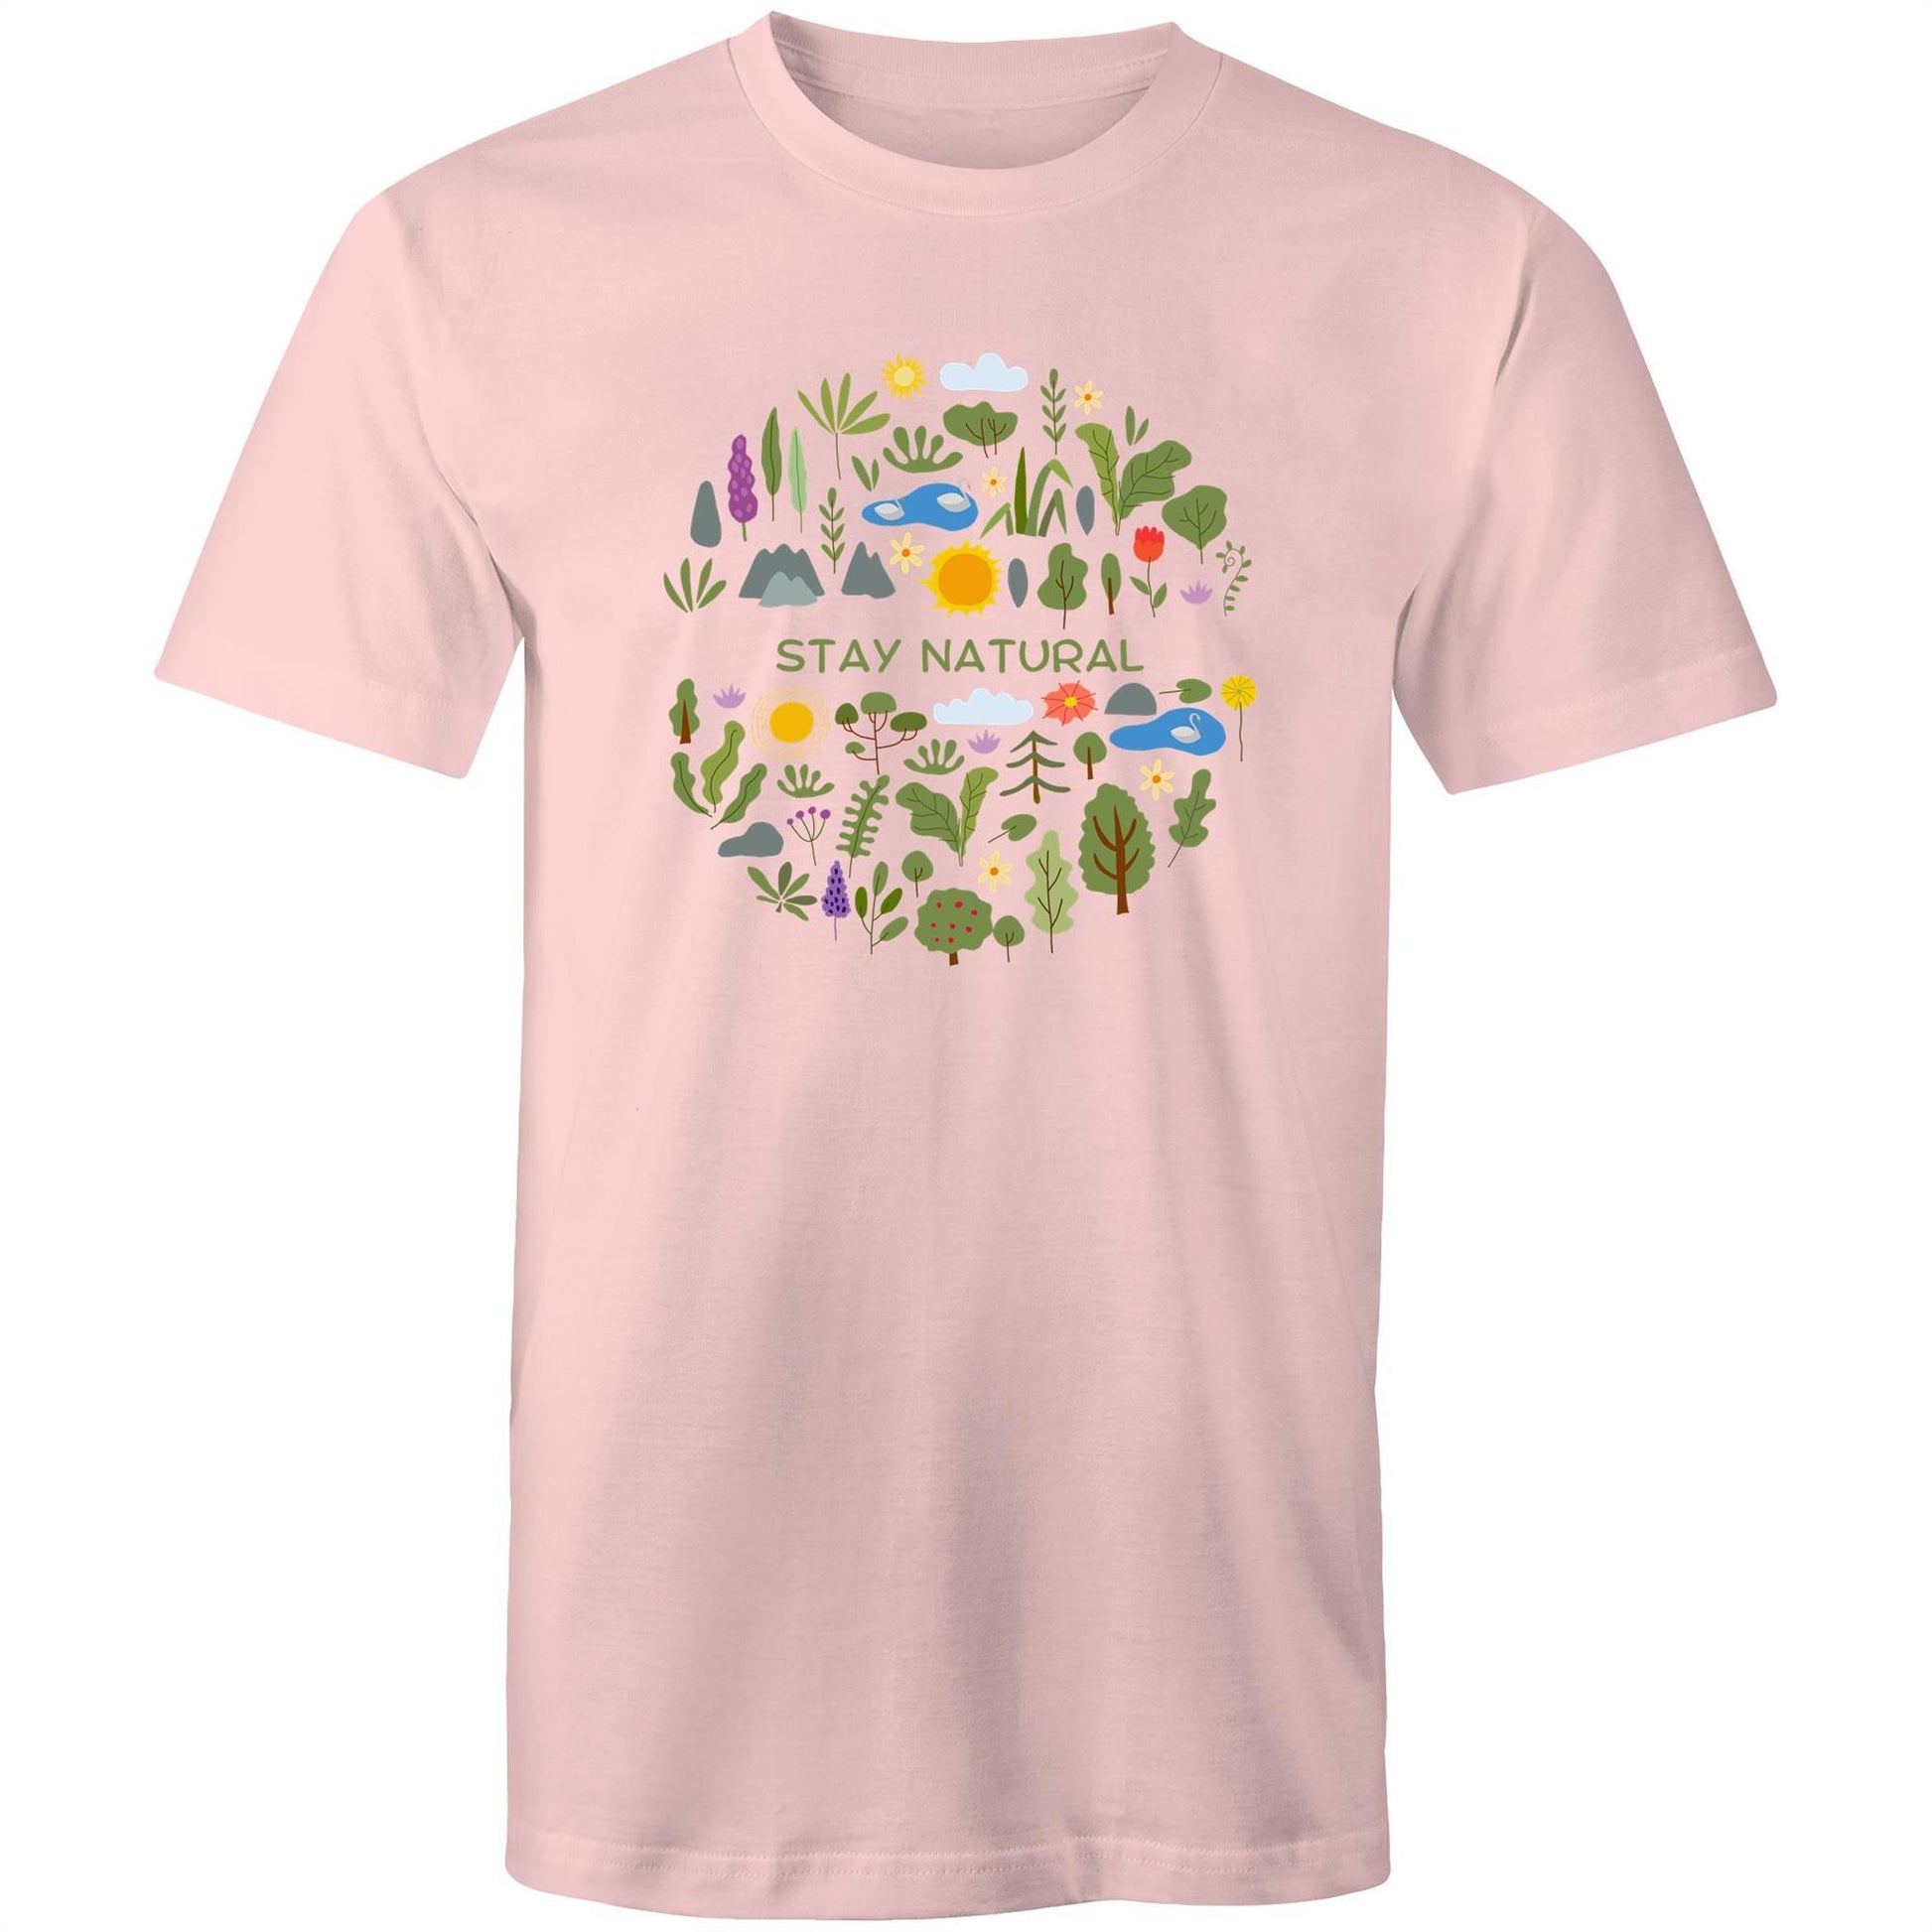 Stay Natural - Mens T-Shirt Pink Mens T-shirt Environment Plants